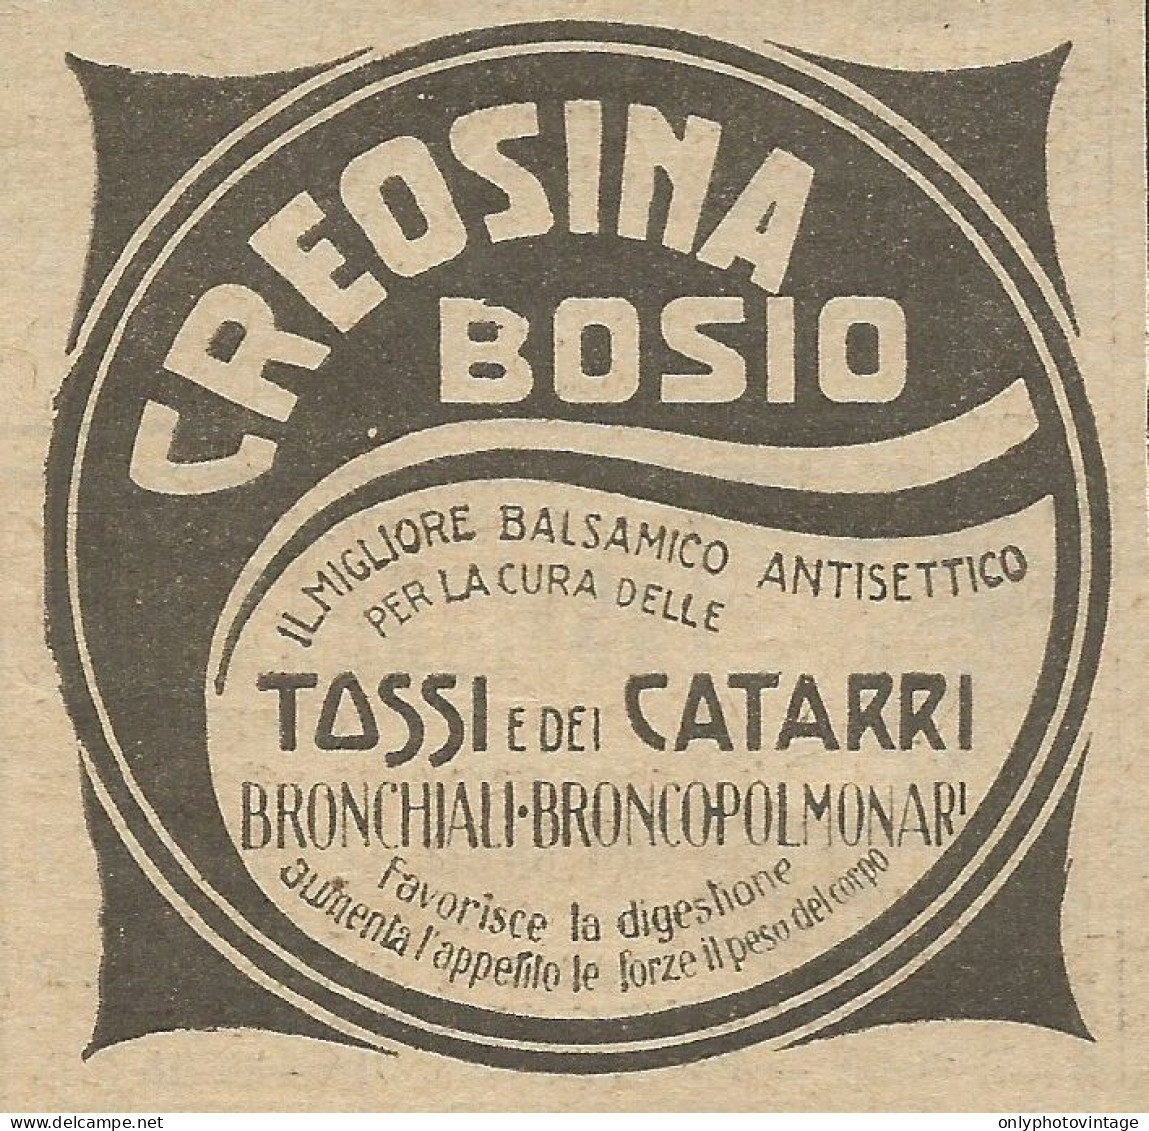 Creosina Bosio Il Miglior Balsamico - Pubblicità 1924 - Advertising - Reclame